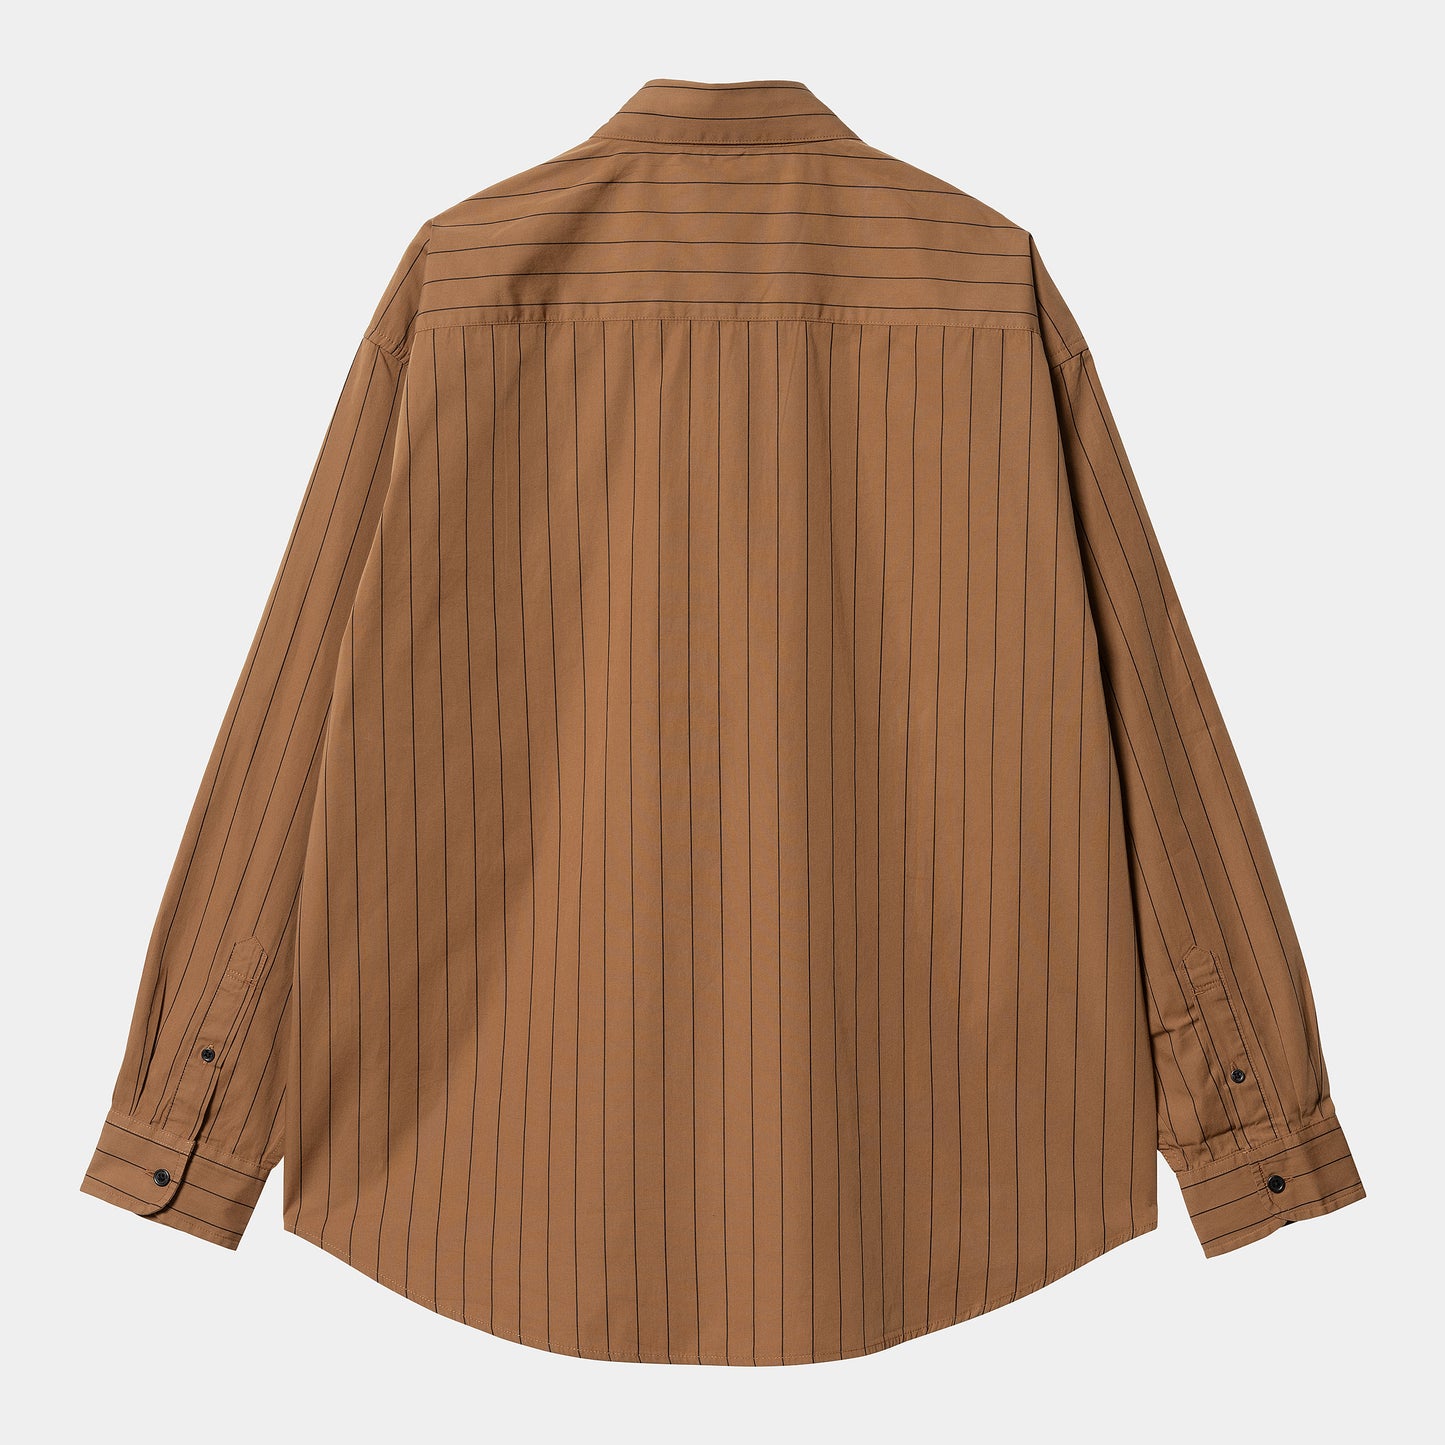 Carhartt - L/S Orlean Shirt Hamilton Brown/Black